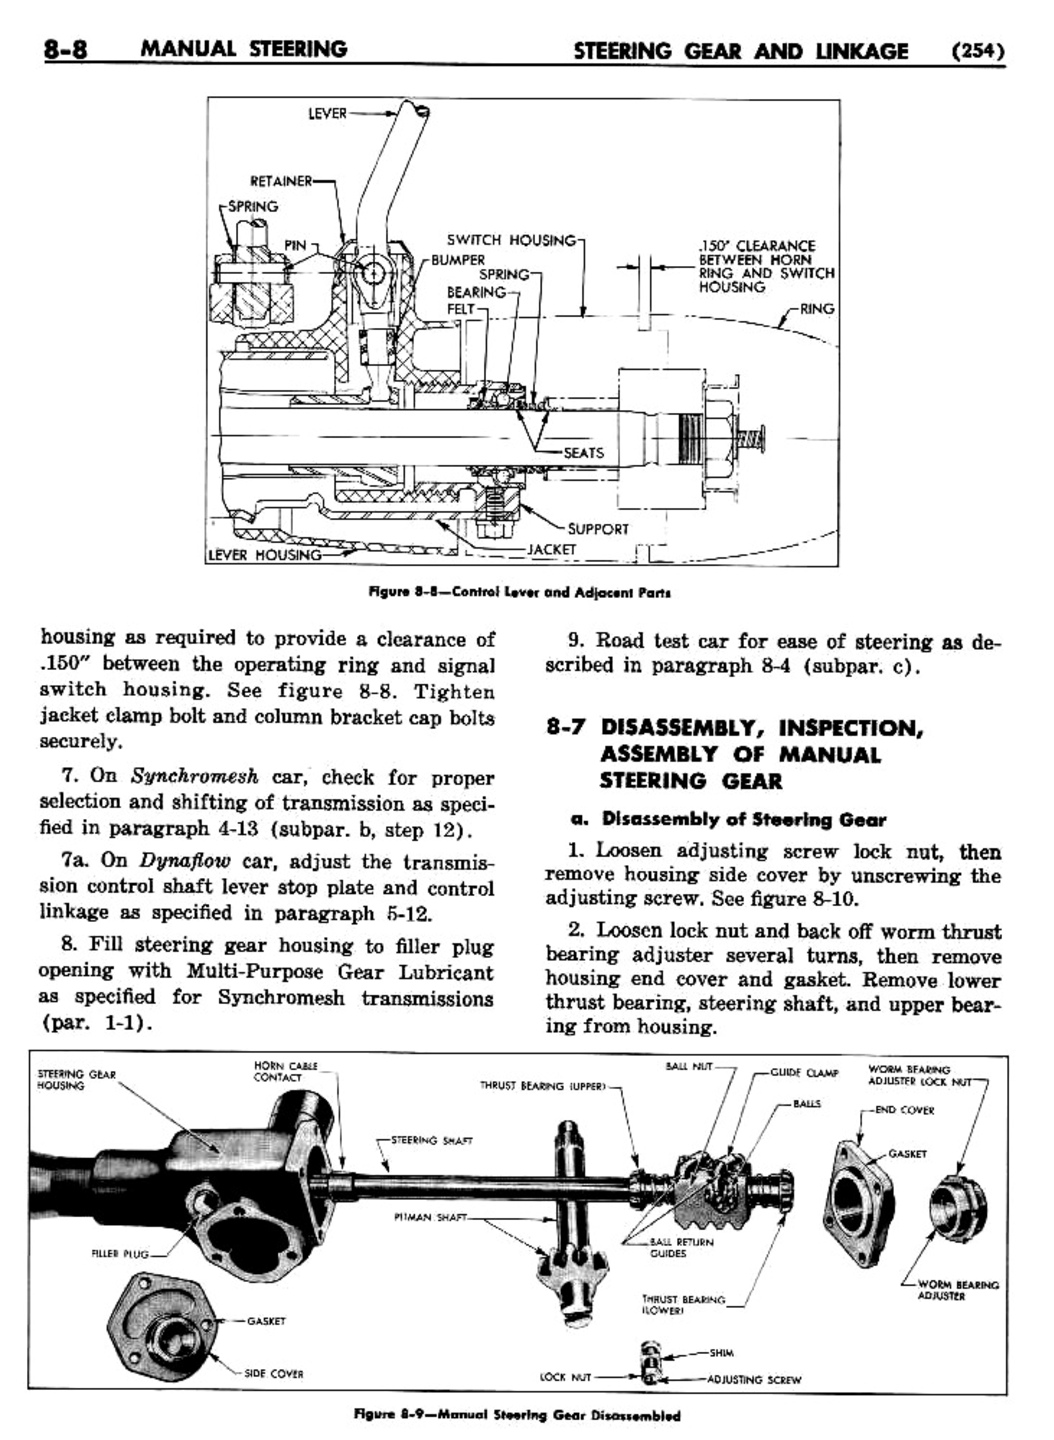 n_09 1955 Buick Shop Manual - Steering-008-008.jpg